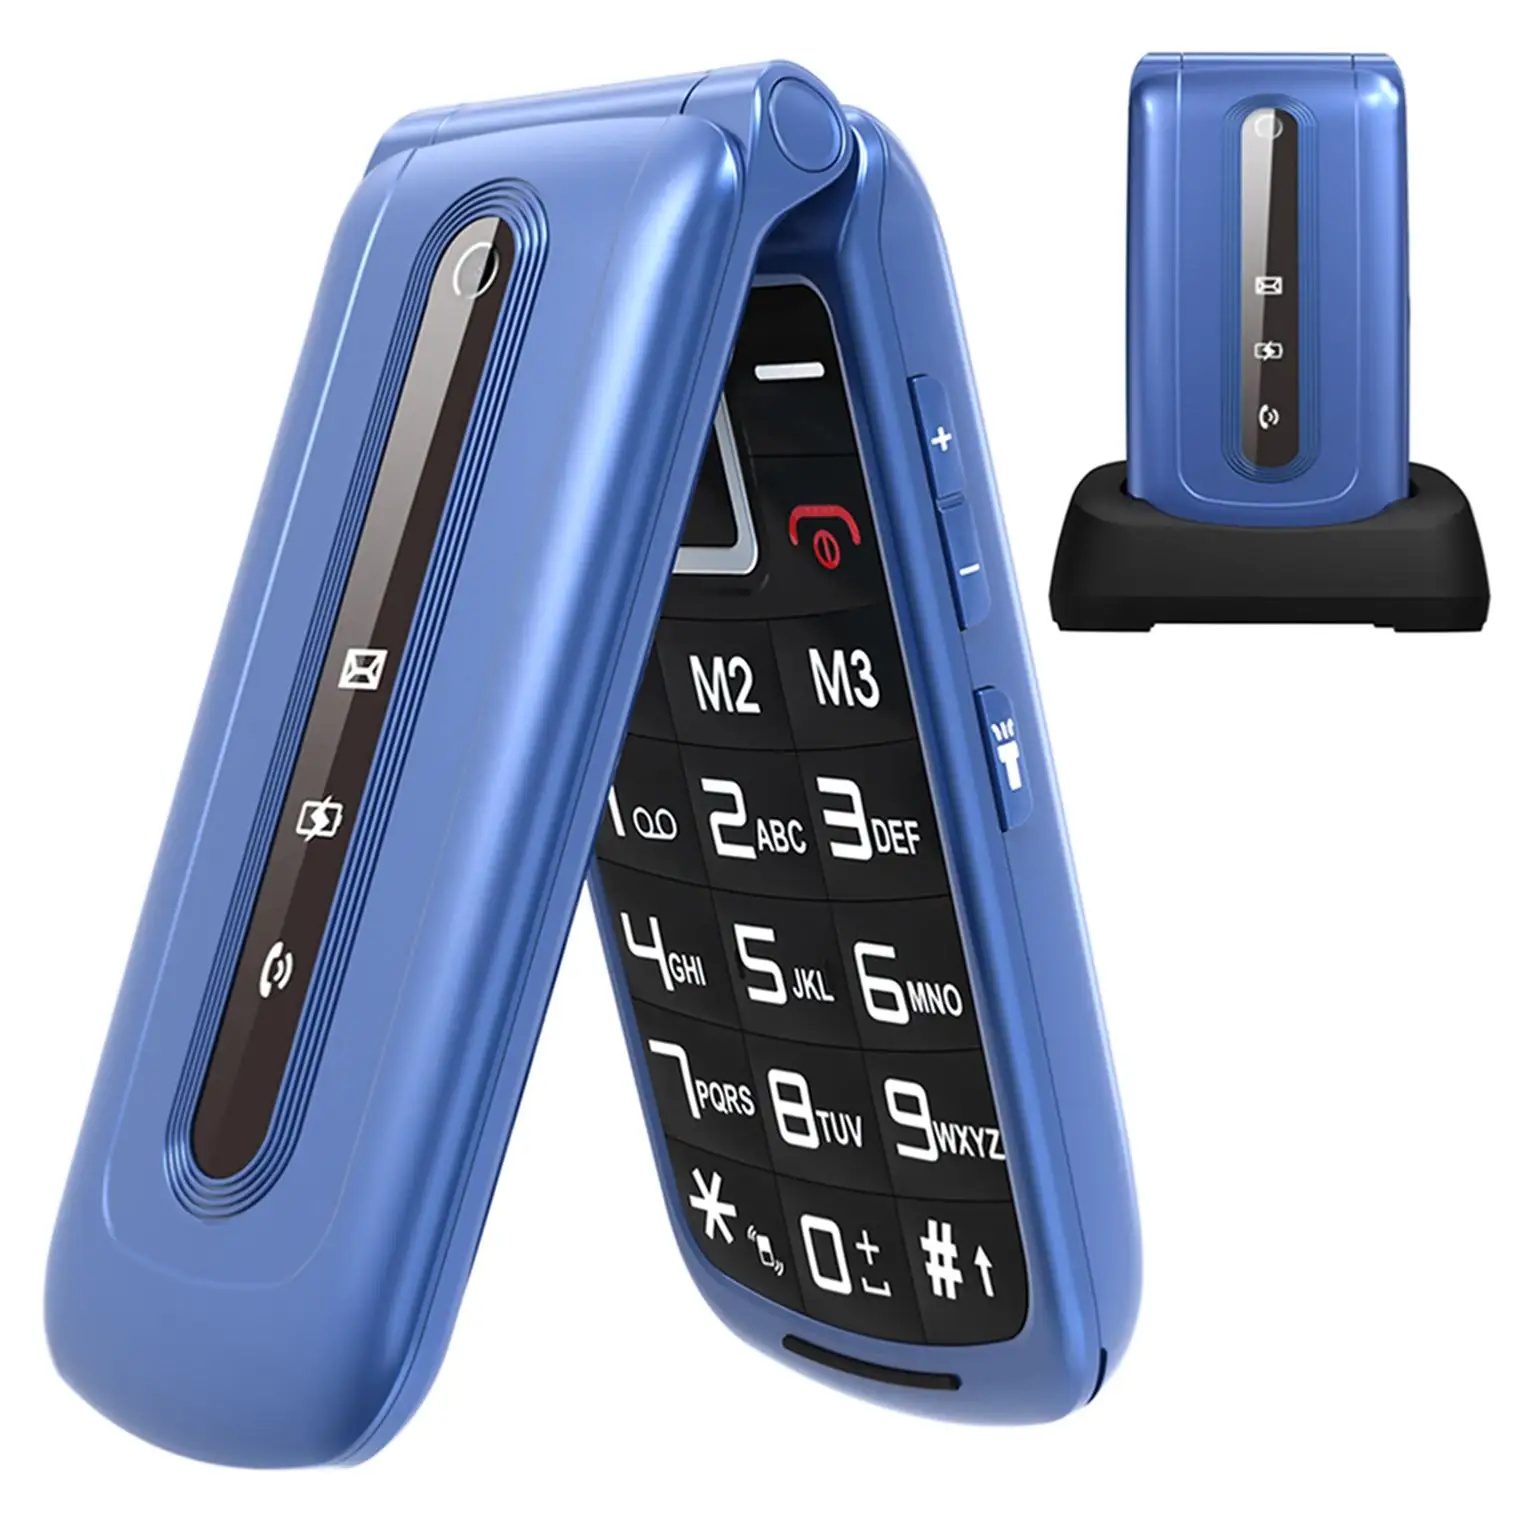 هاتف جديد قابل للطي من الجيل الثاني مزود بنظام GSM وشاشة مقاس 2.4 بوصة هاتف خلوي أساسي مزود بخاصية LCD وموجات FM وخاصية Bluetooth لكبار السن